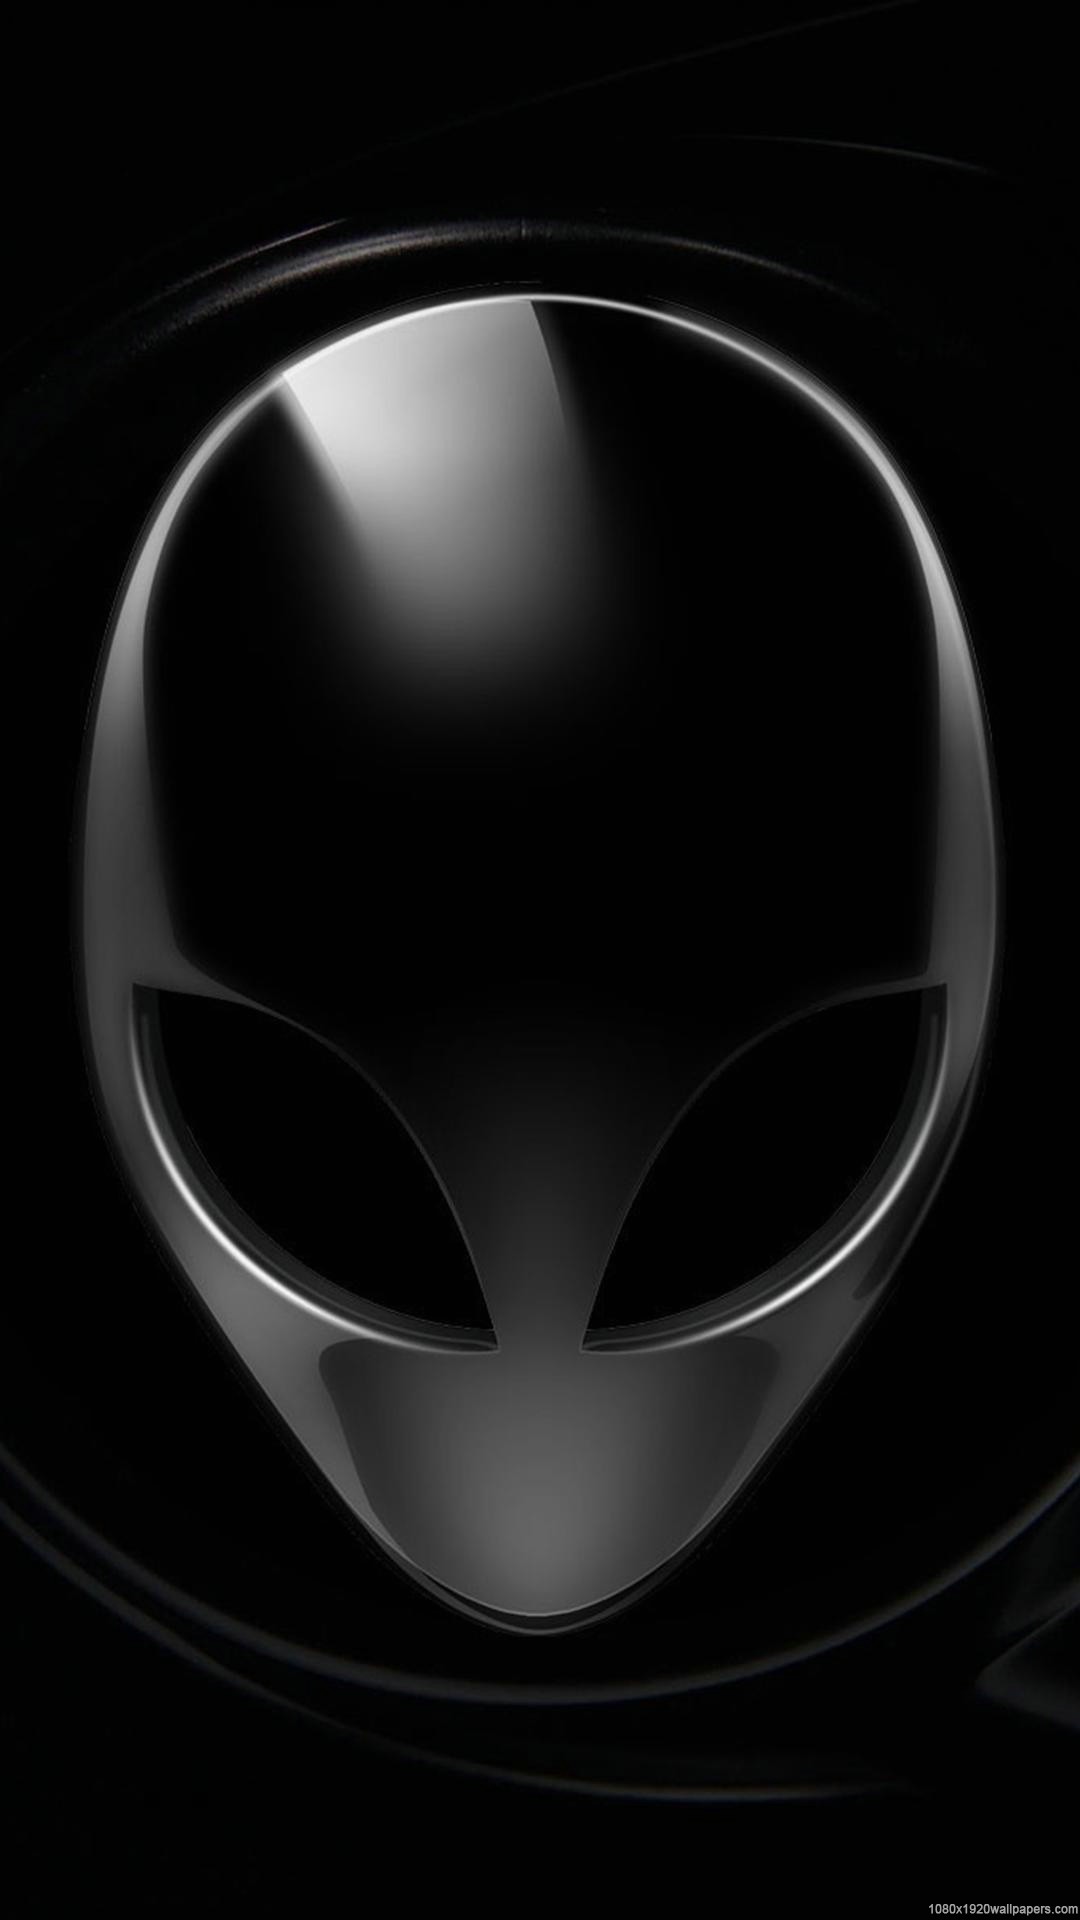 1080x1920 44 best Alienware images on Pinterest | Alienware, Computers and Computer  wallpaper